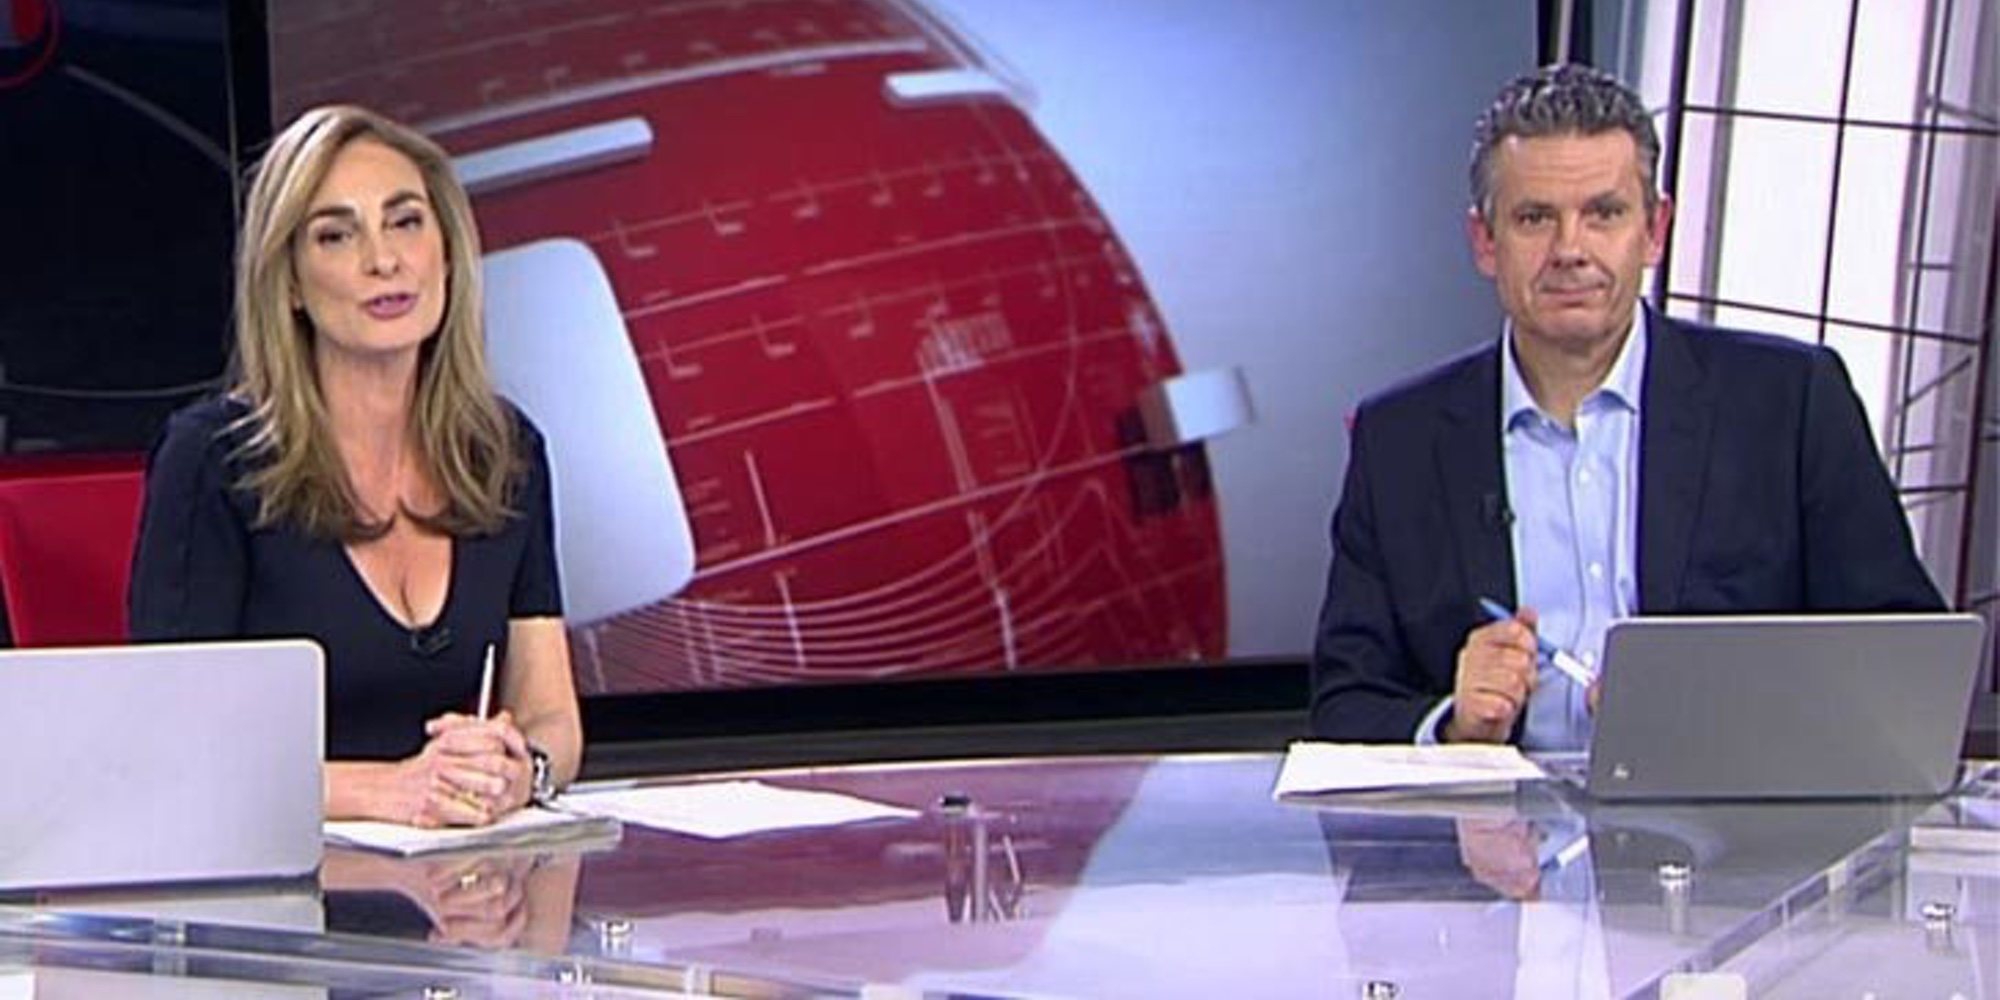 Tras el cese de los informativos diarios de Cuatro, Mediaset añade a la lista el telediario del fin de semana